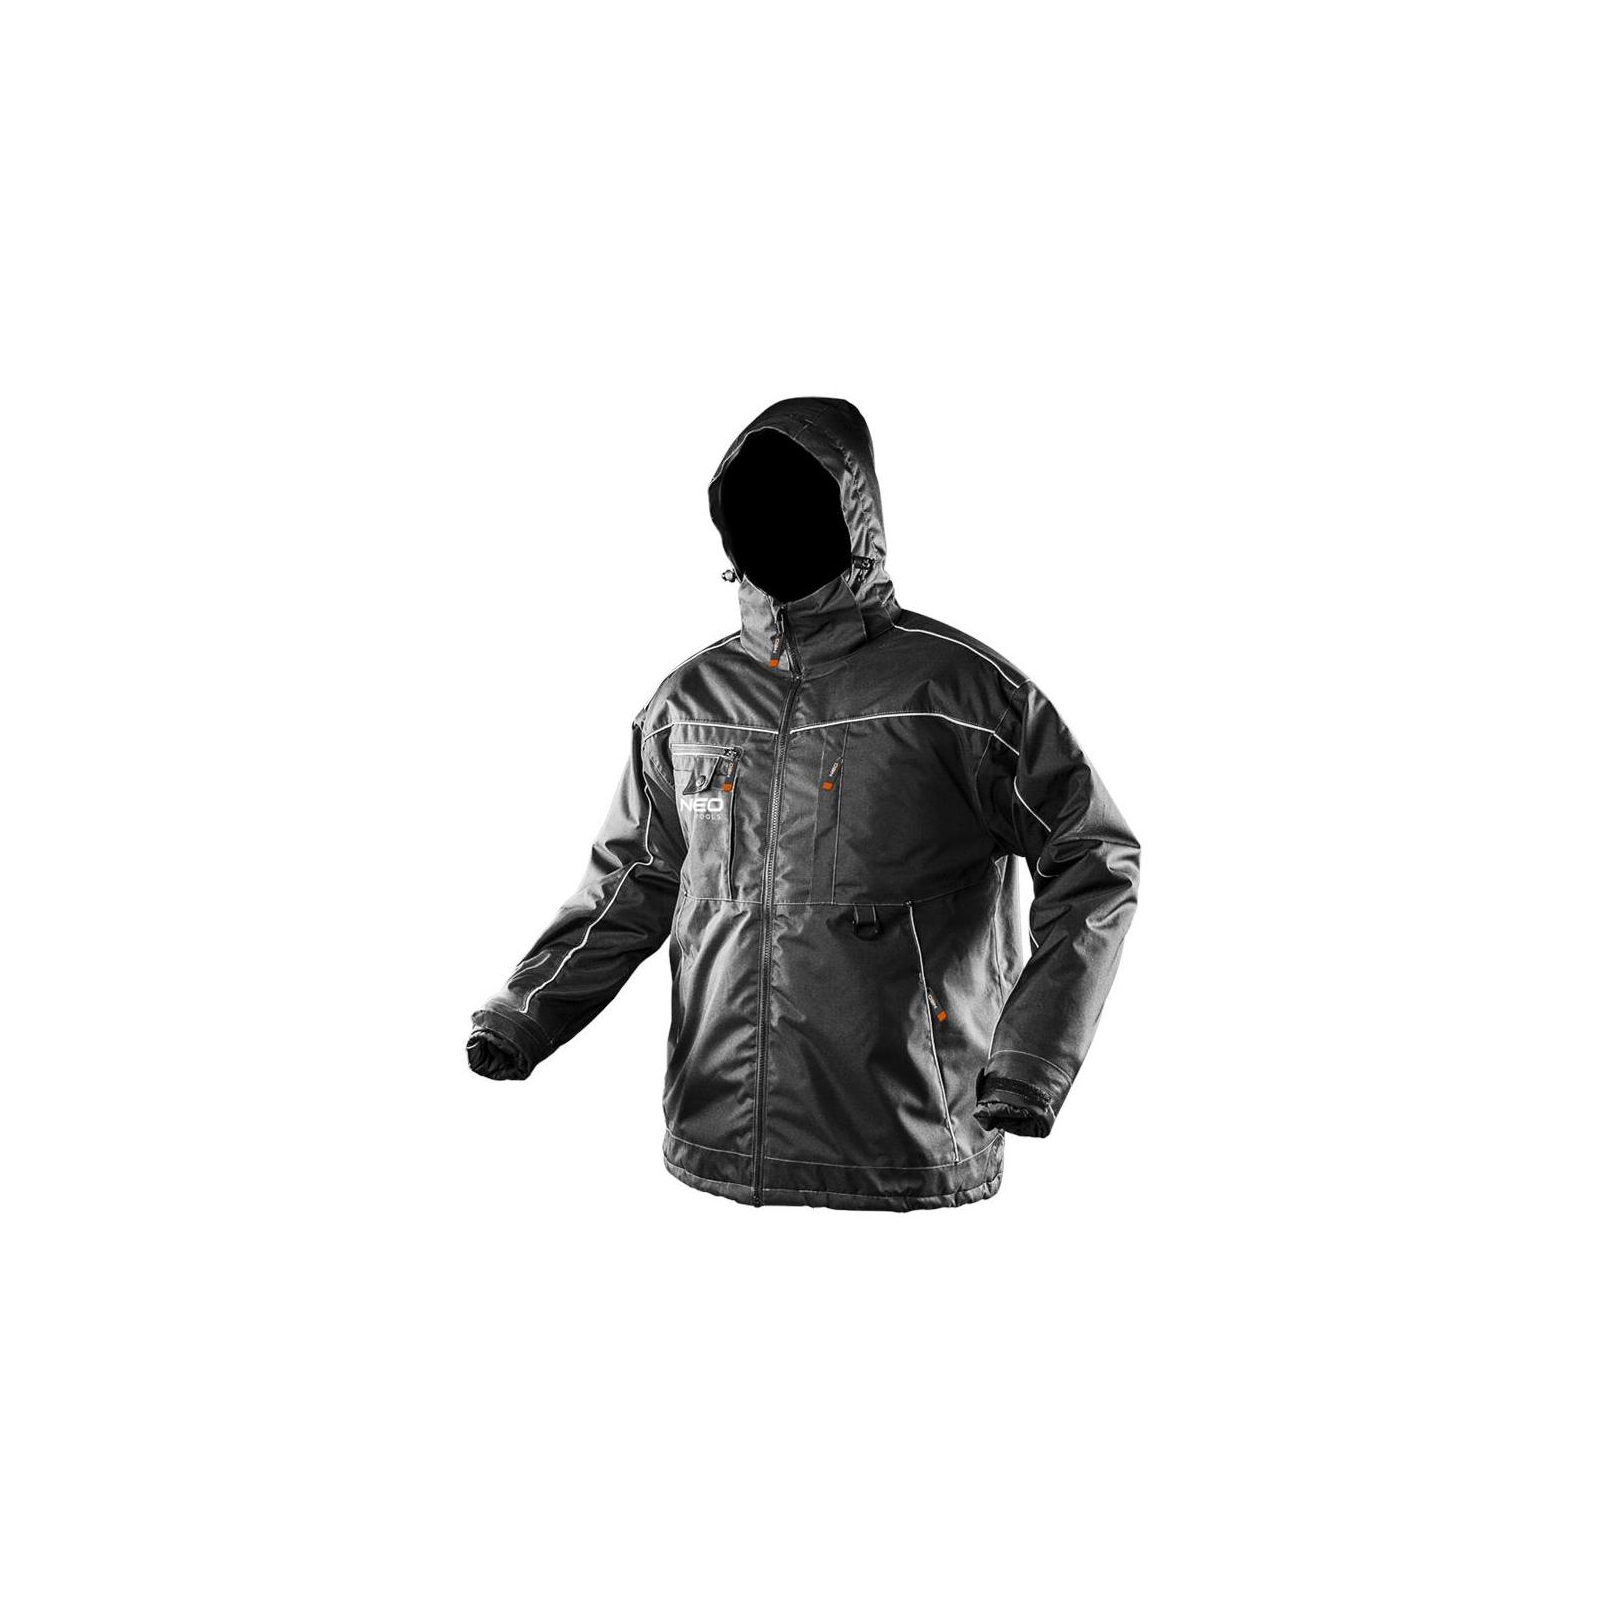 Куртка рабочая Neo Tools Oxford, размер S/48, водостойкая, светоотраж.елем, утепленна (81-570-S)